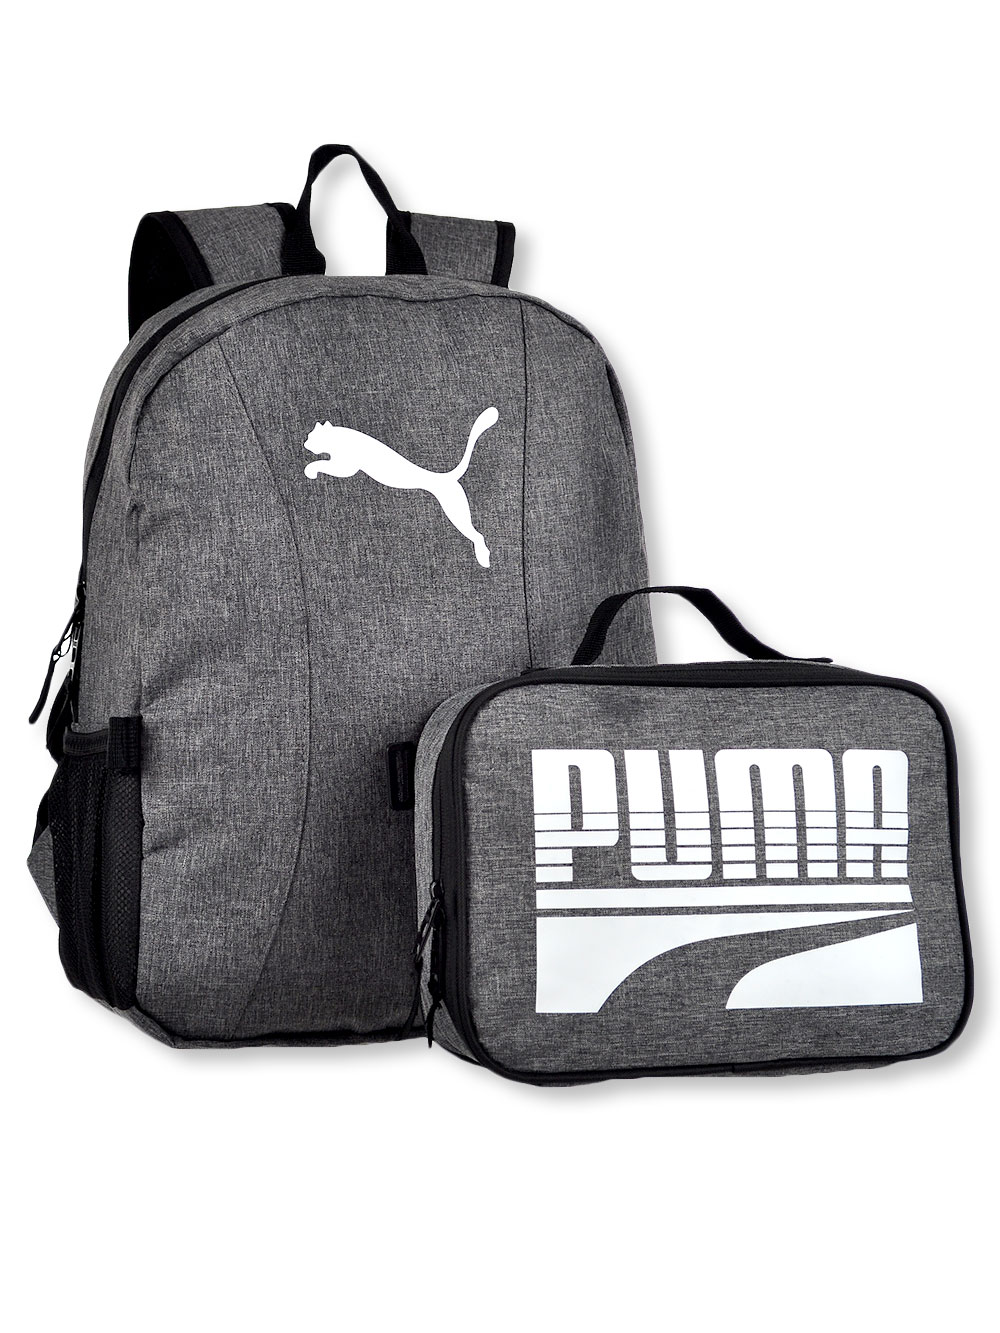 puma backpack and lunchbox